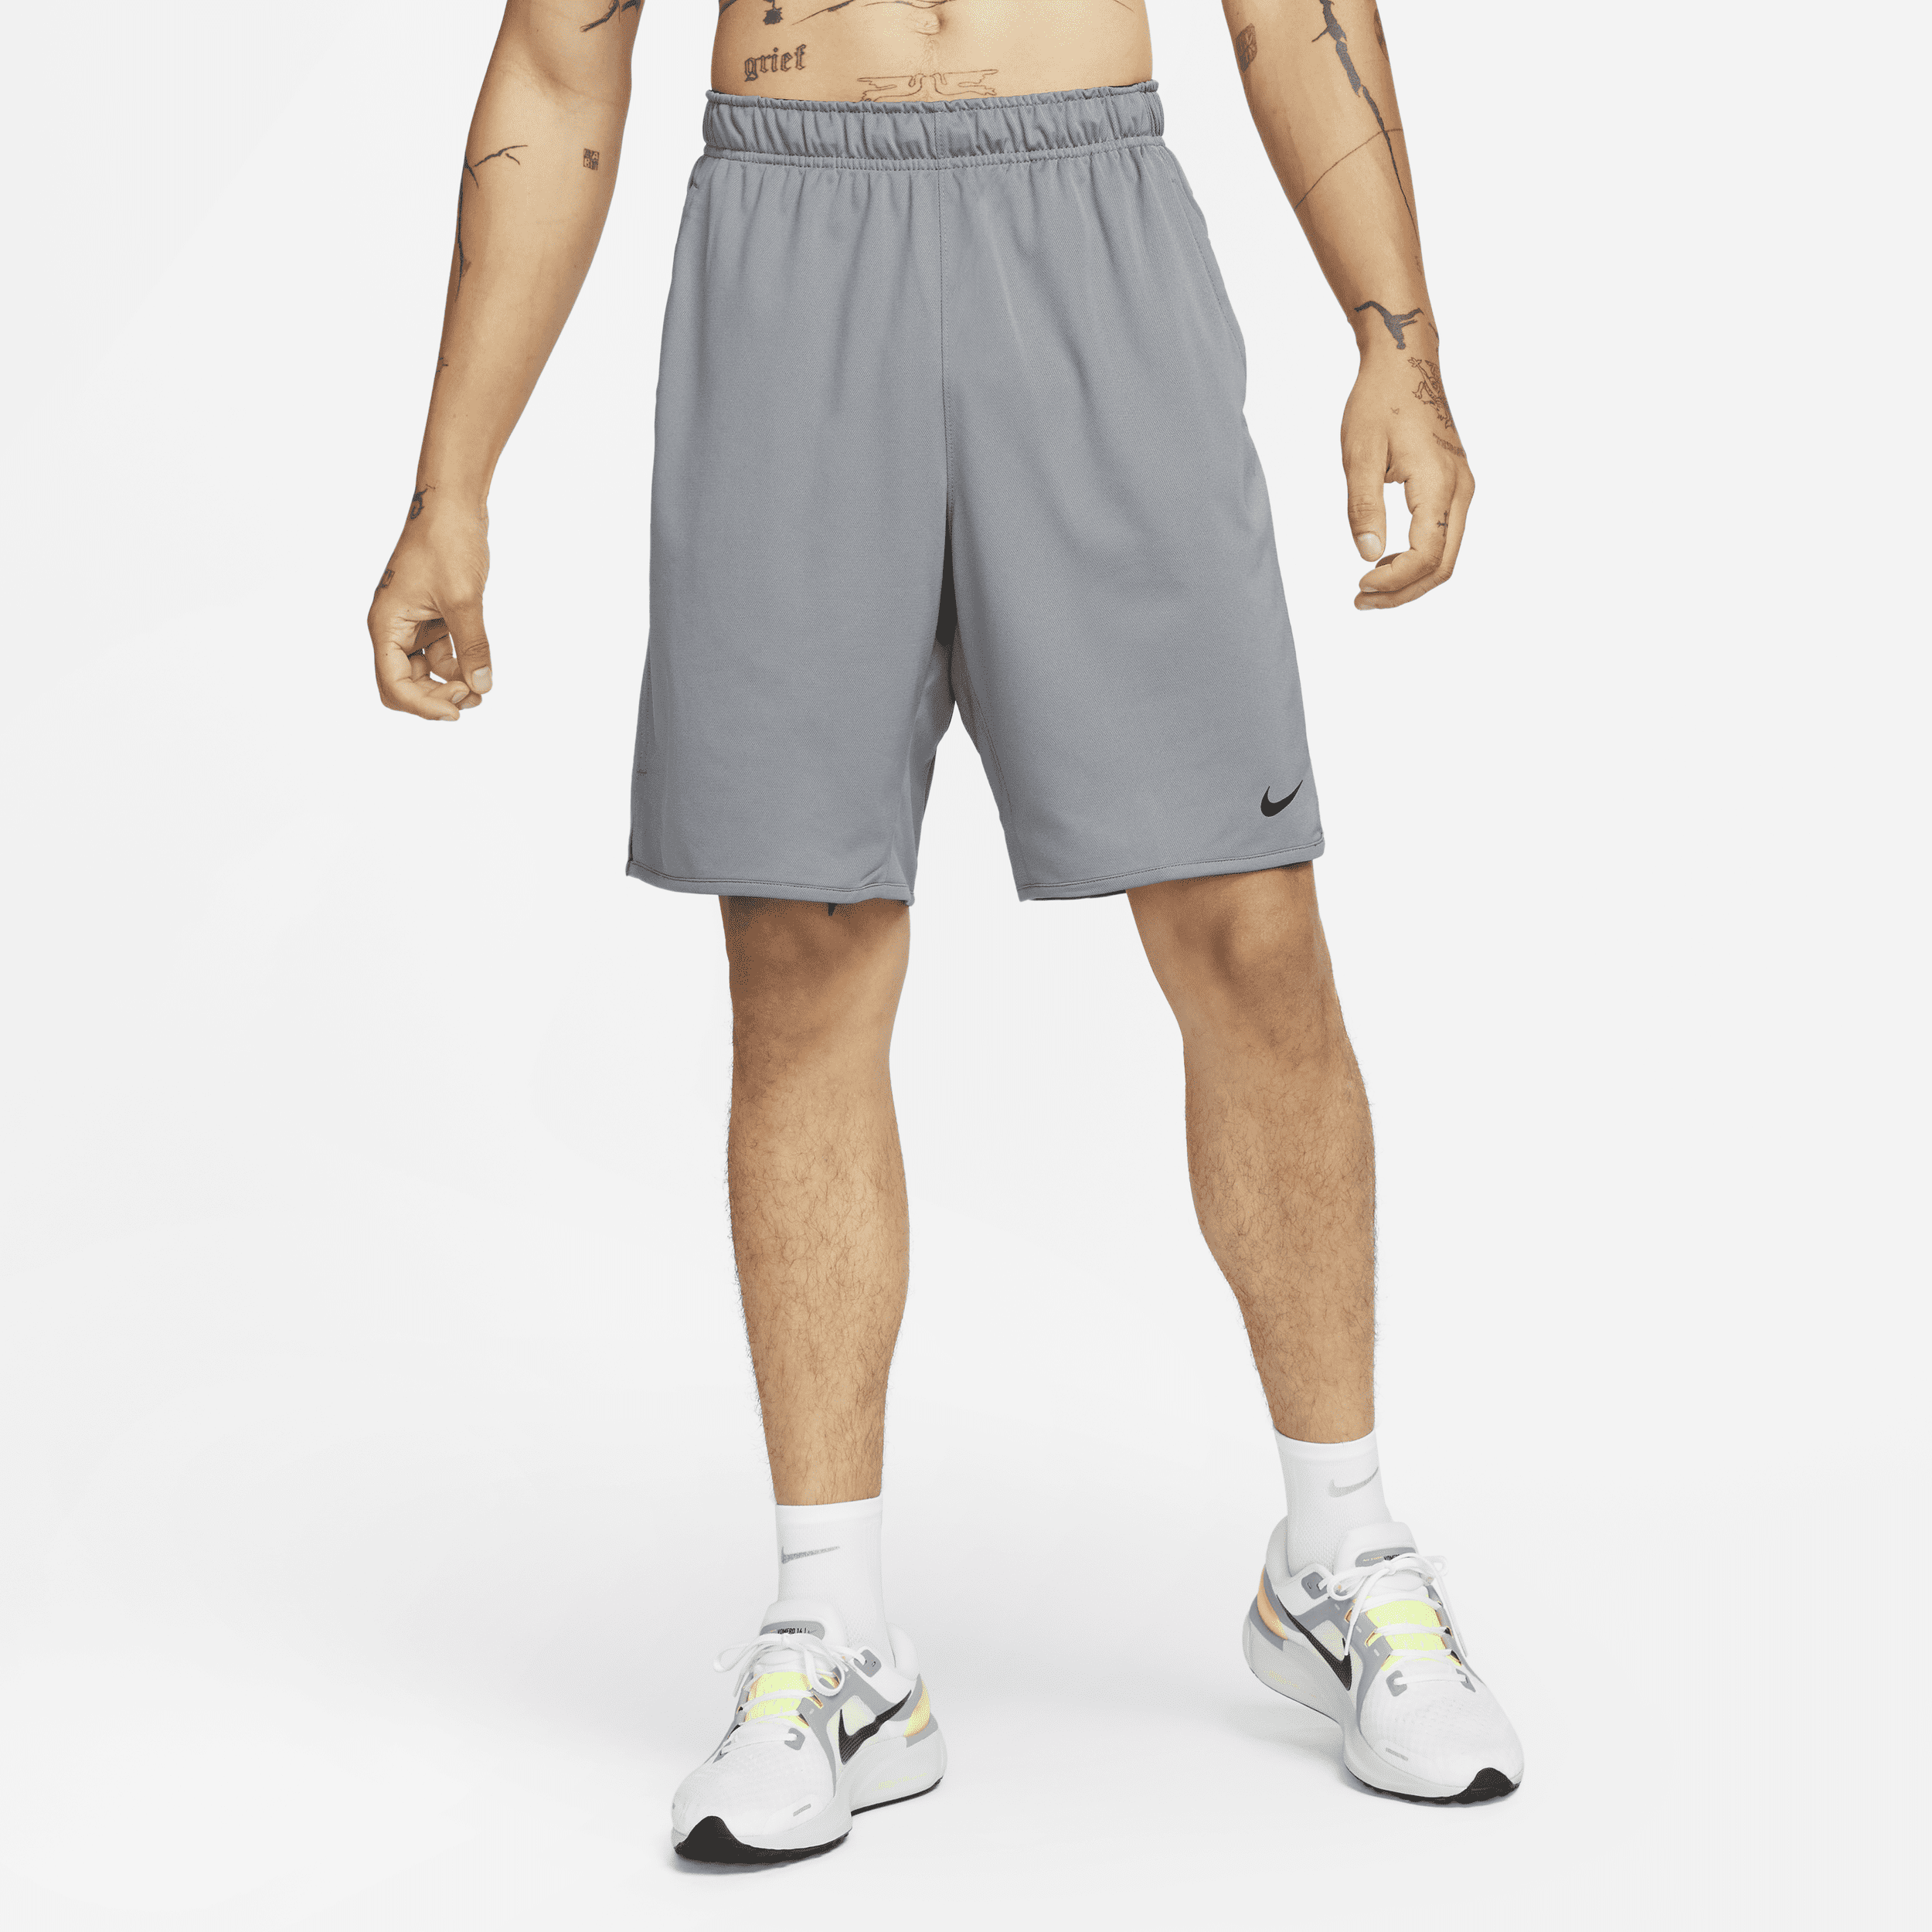 Shorts versatili non foderati Dri-FIT 23 cm Nike Totality – Uomo - Grigio